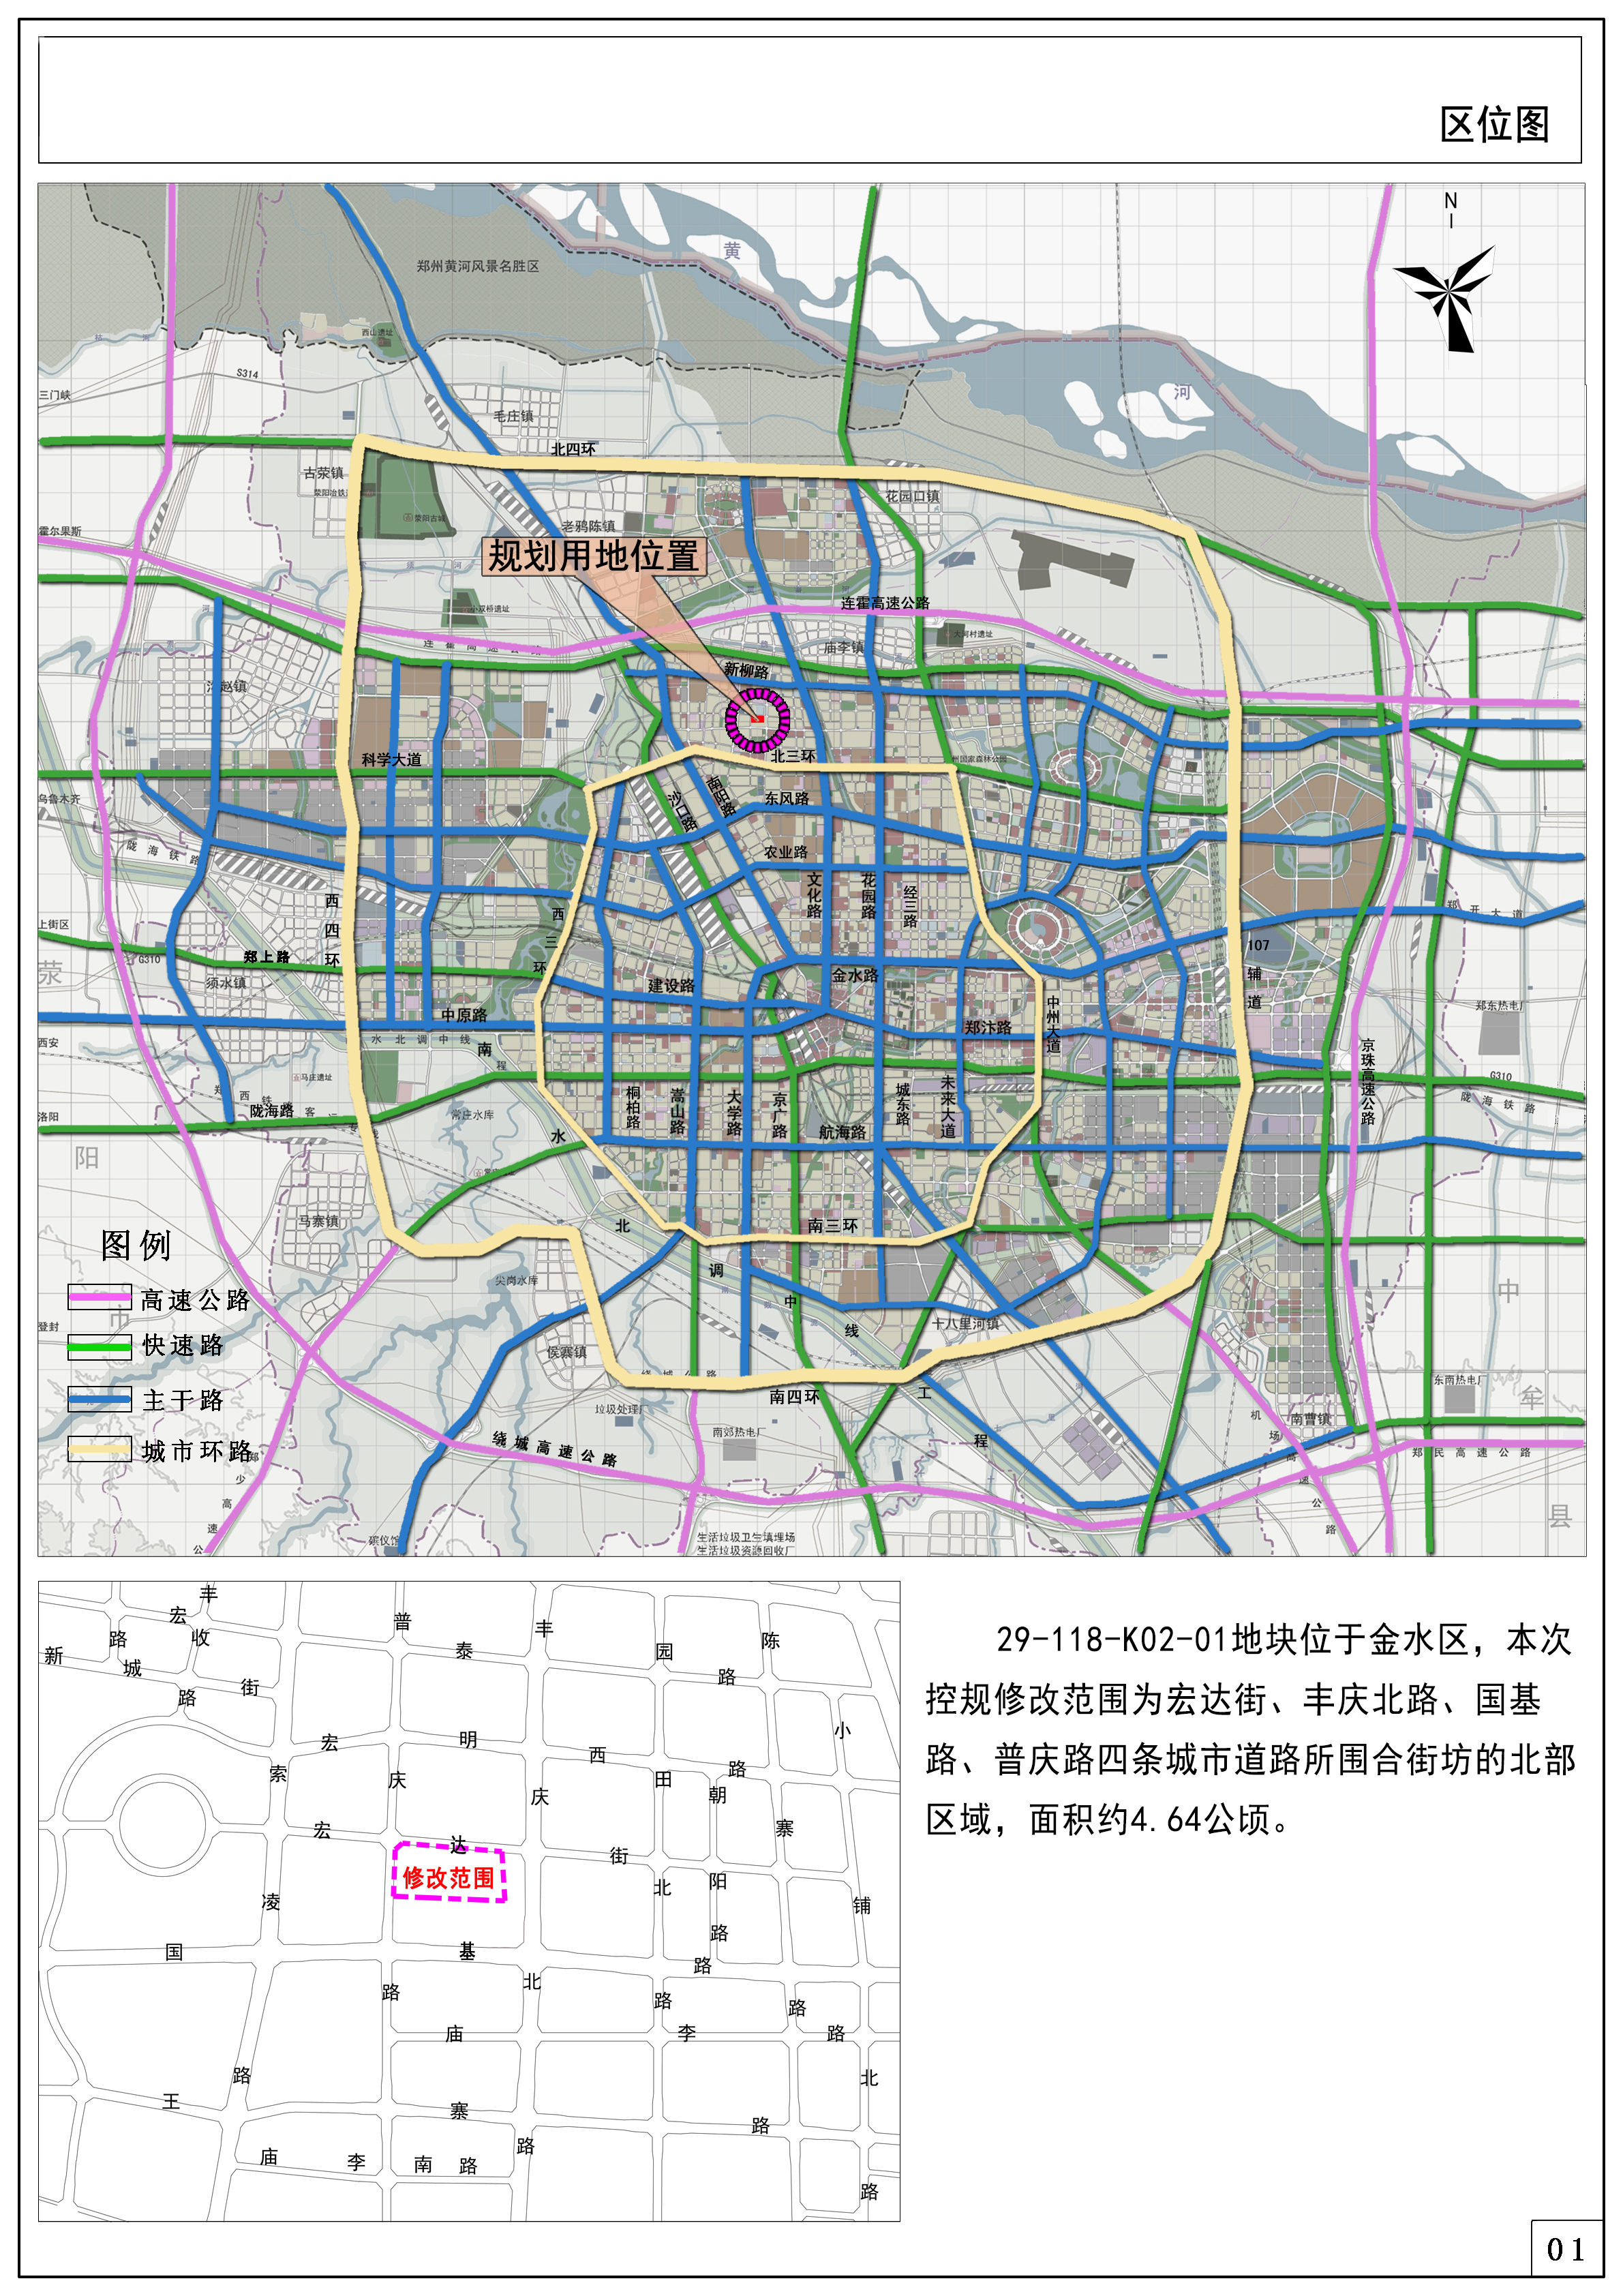 《郑州市第29-118-K02街坊控制性详细规划》29-118-K02-01地块修改论证报告